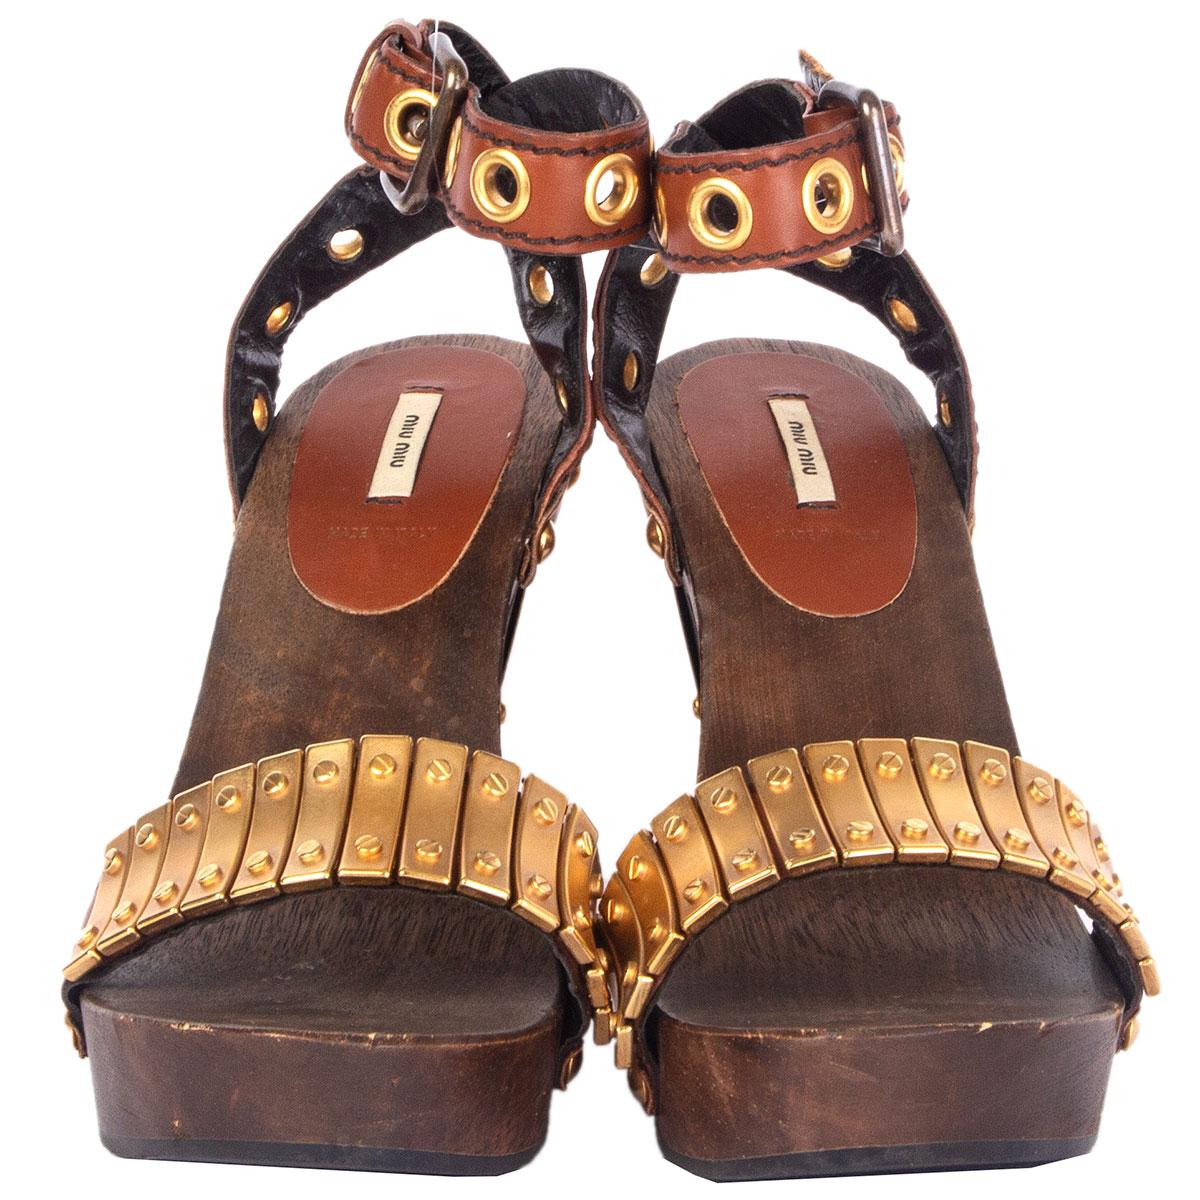 100% authentische Miu Miu Sandalen aus braunem Holz und Leder, verziert mit goldfarbenen Metallplatten und Nieten. Haben mit einigen schwachen Dellen auf der hölzernen Plattform getragen worden. Insgesamt in ausgezeichnetem Zustand. Kommt mit